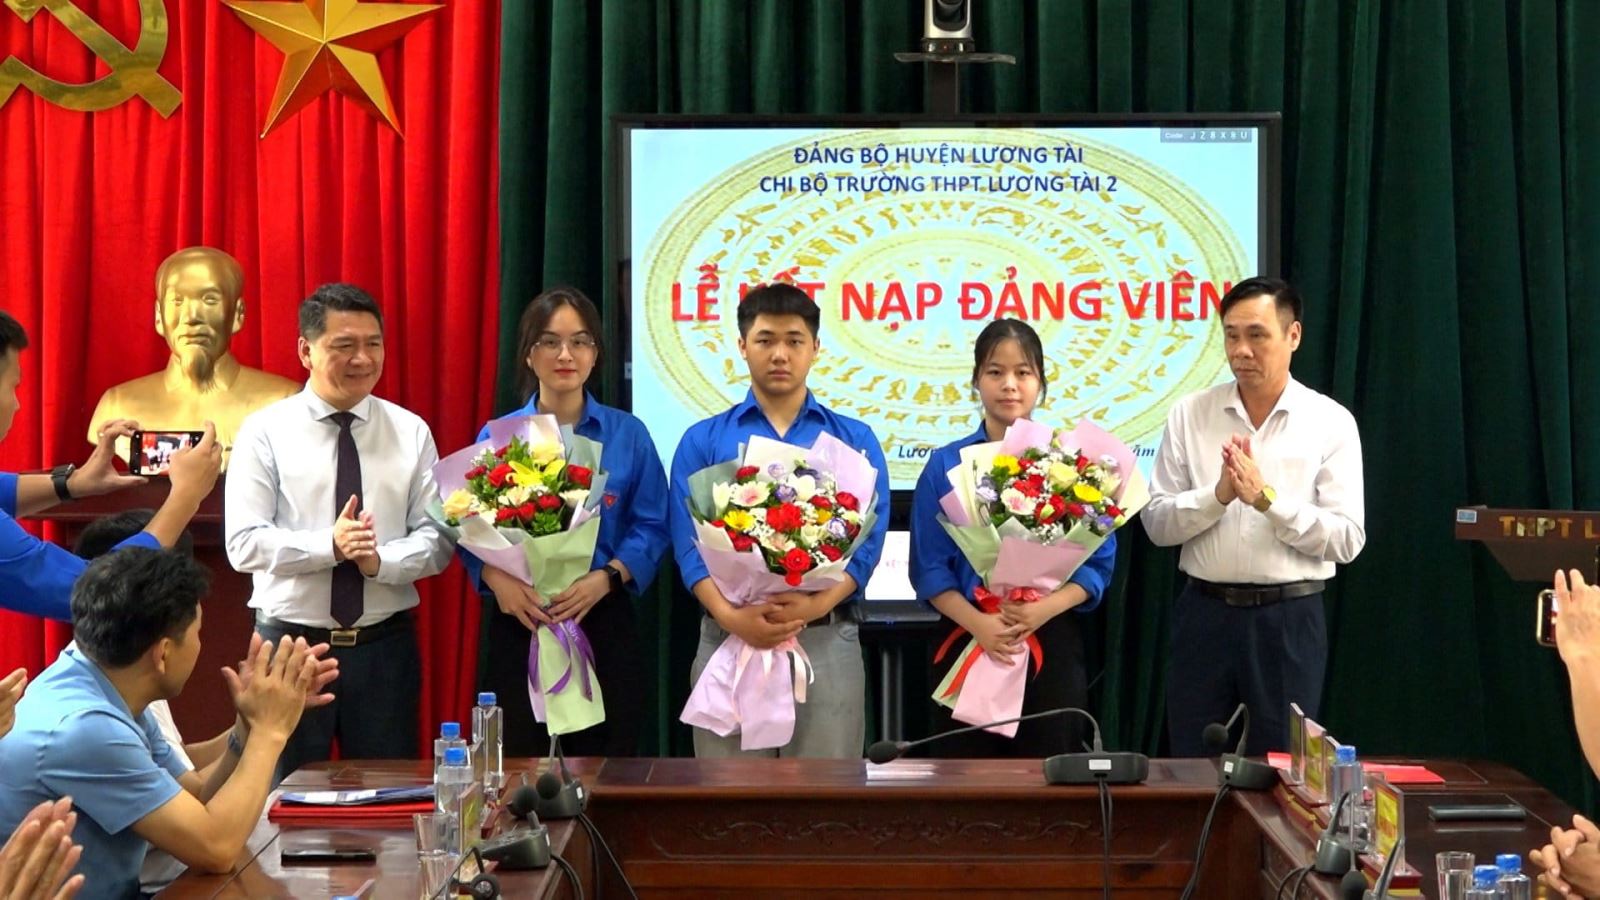 Huyện Lương Tài kết nạp Đảng cho 3 đoàn viên ưu tú là học sinh THPT